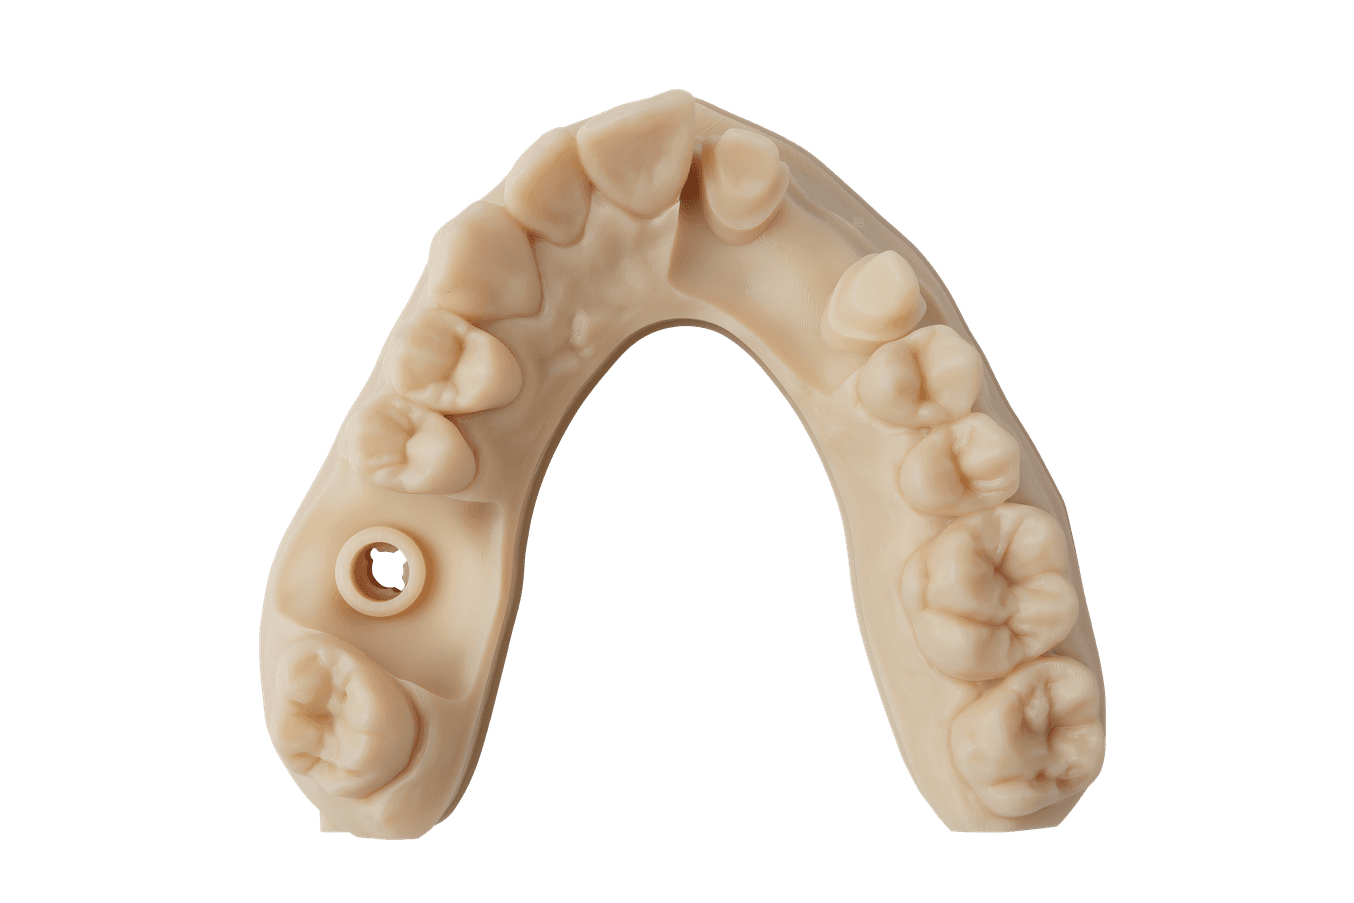 Dental model 3D printed in Precision Model Resin